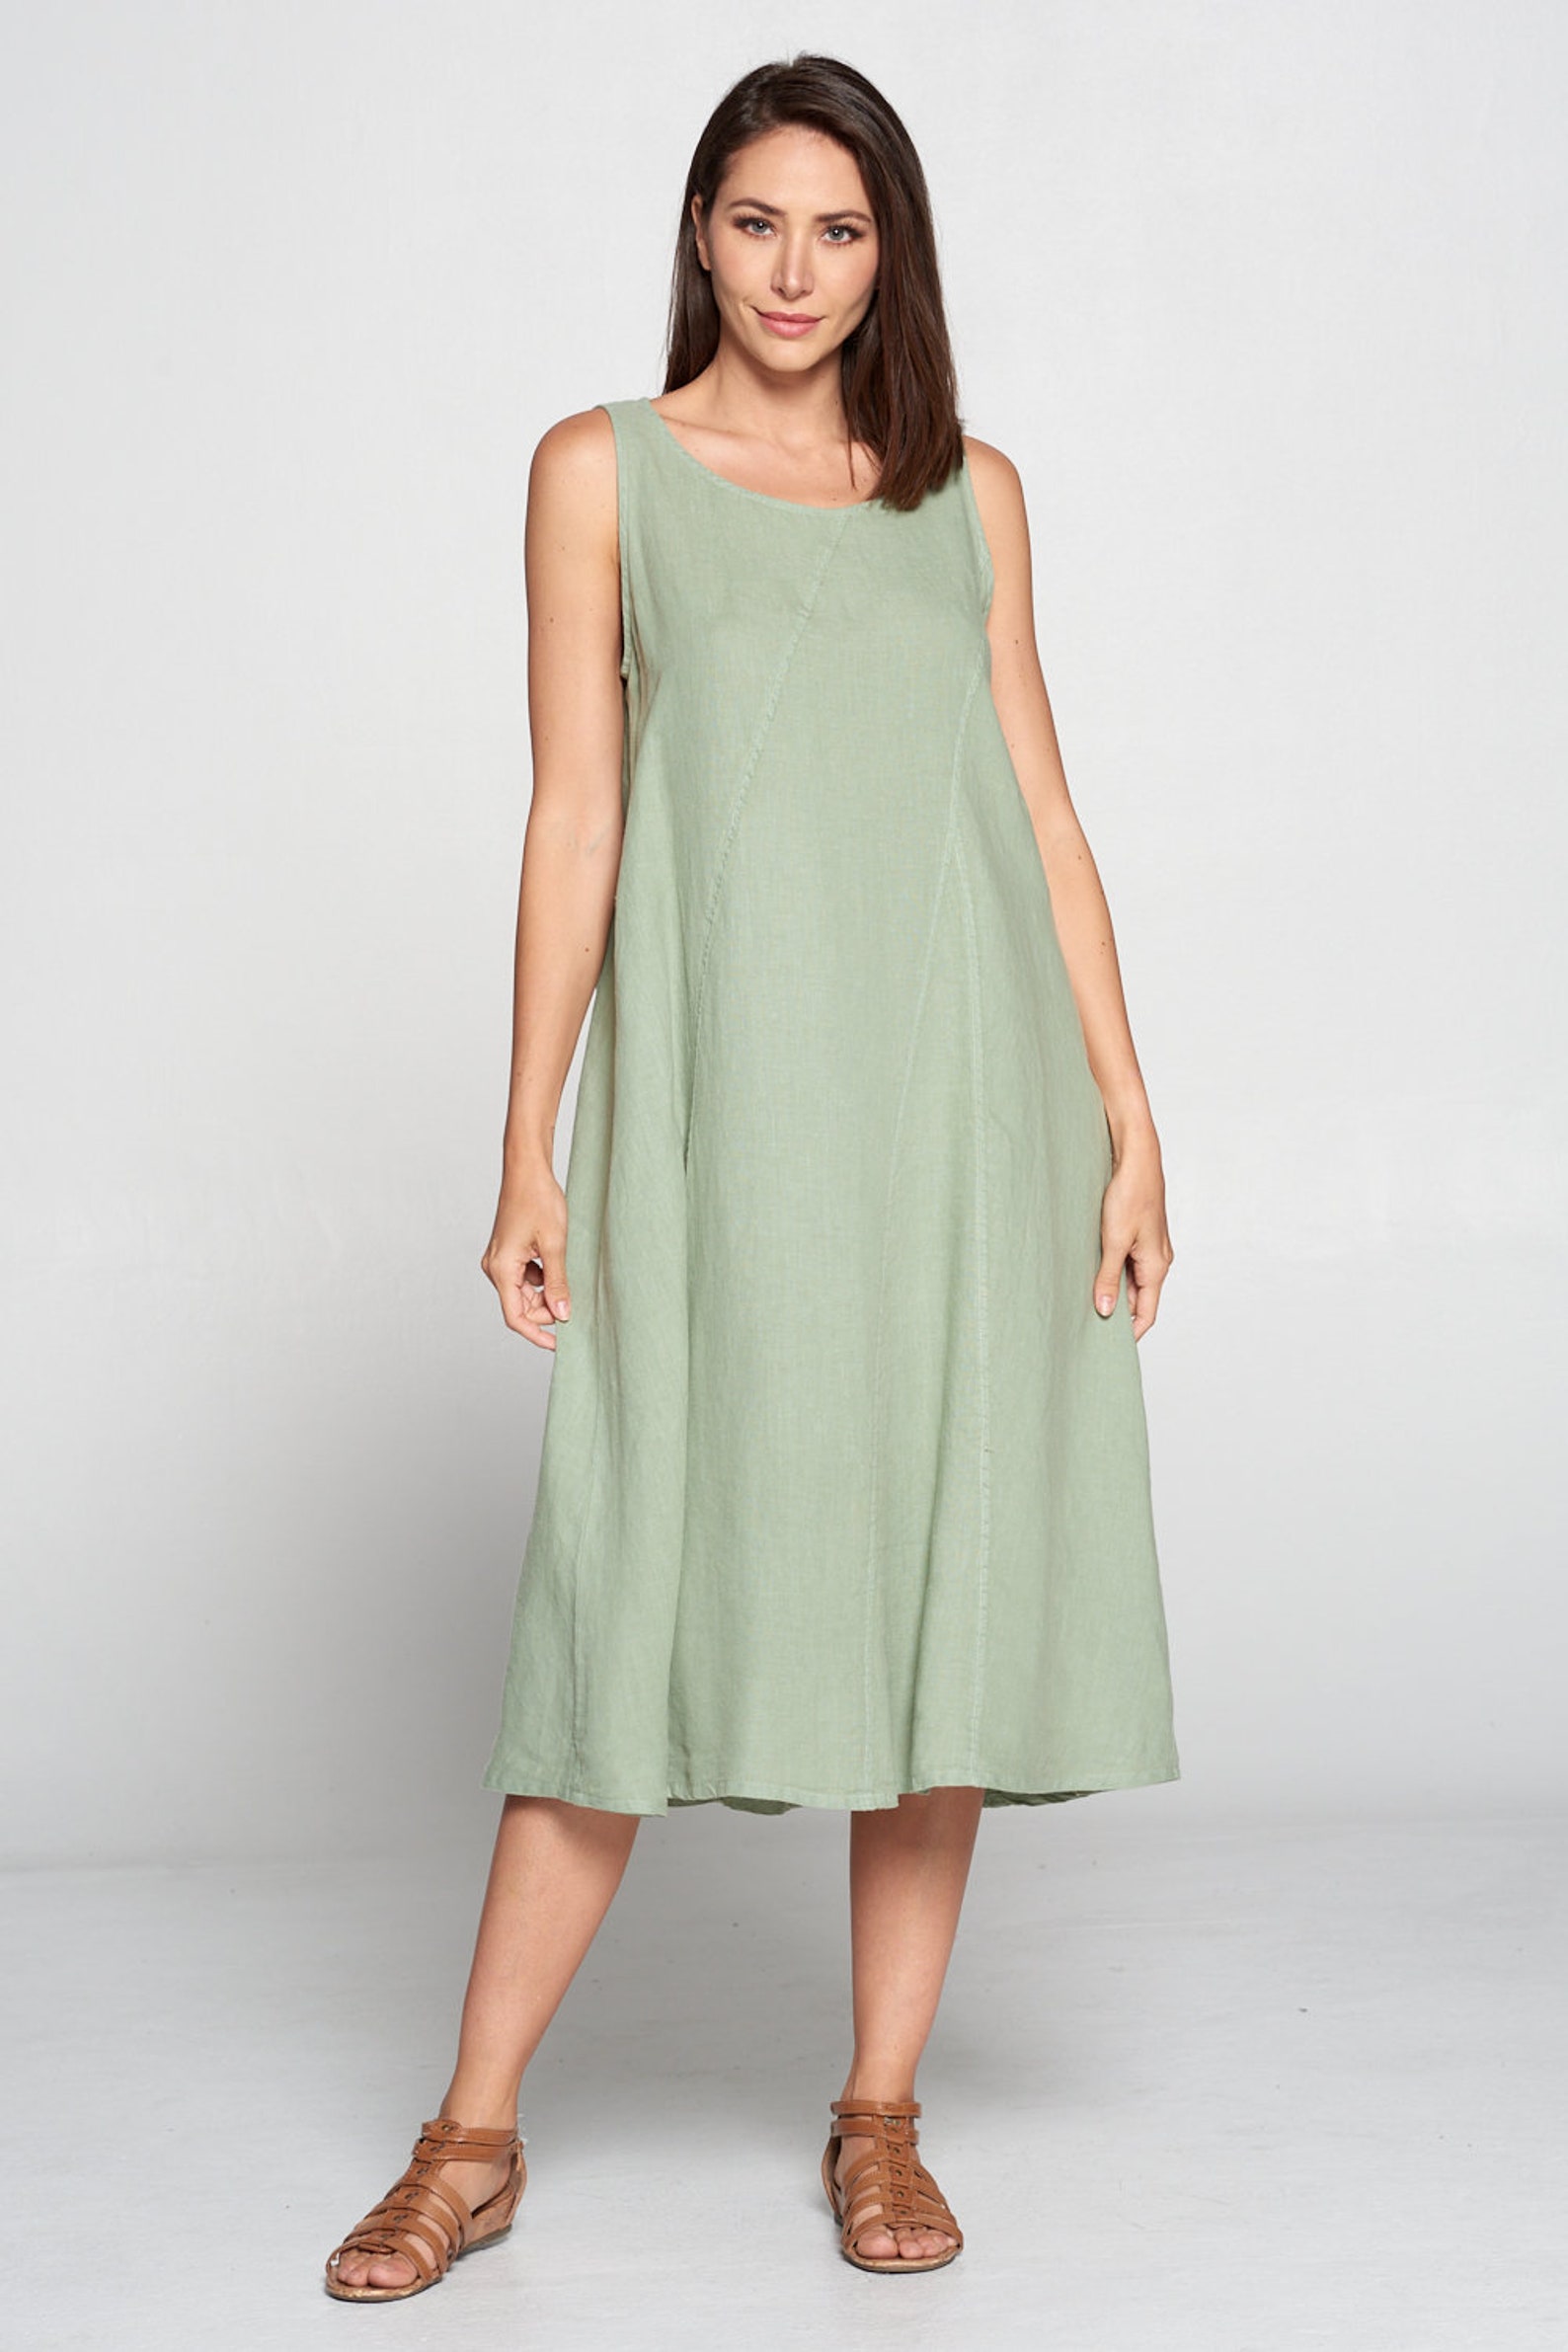 Pure Match 100% Linen Sleeveless Dress Side Hidden Pockets - Etsy